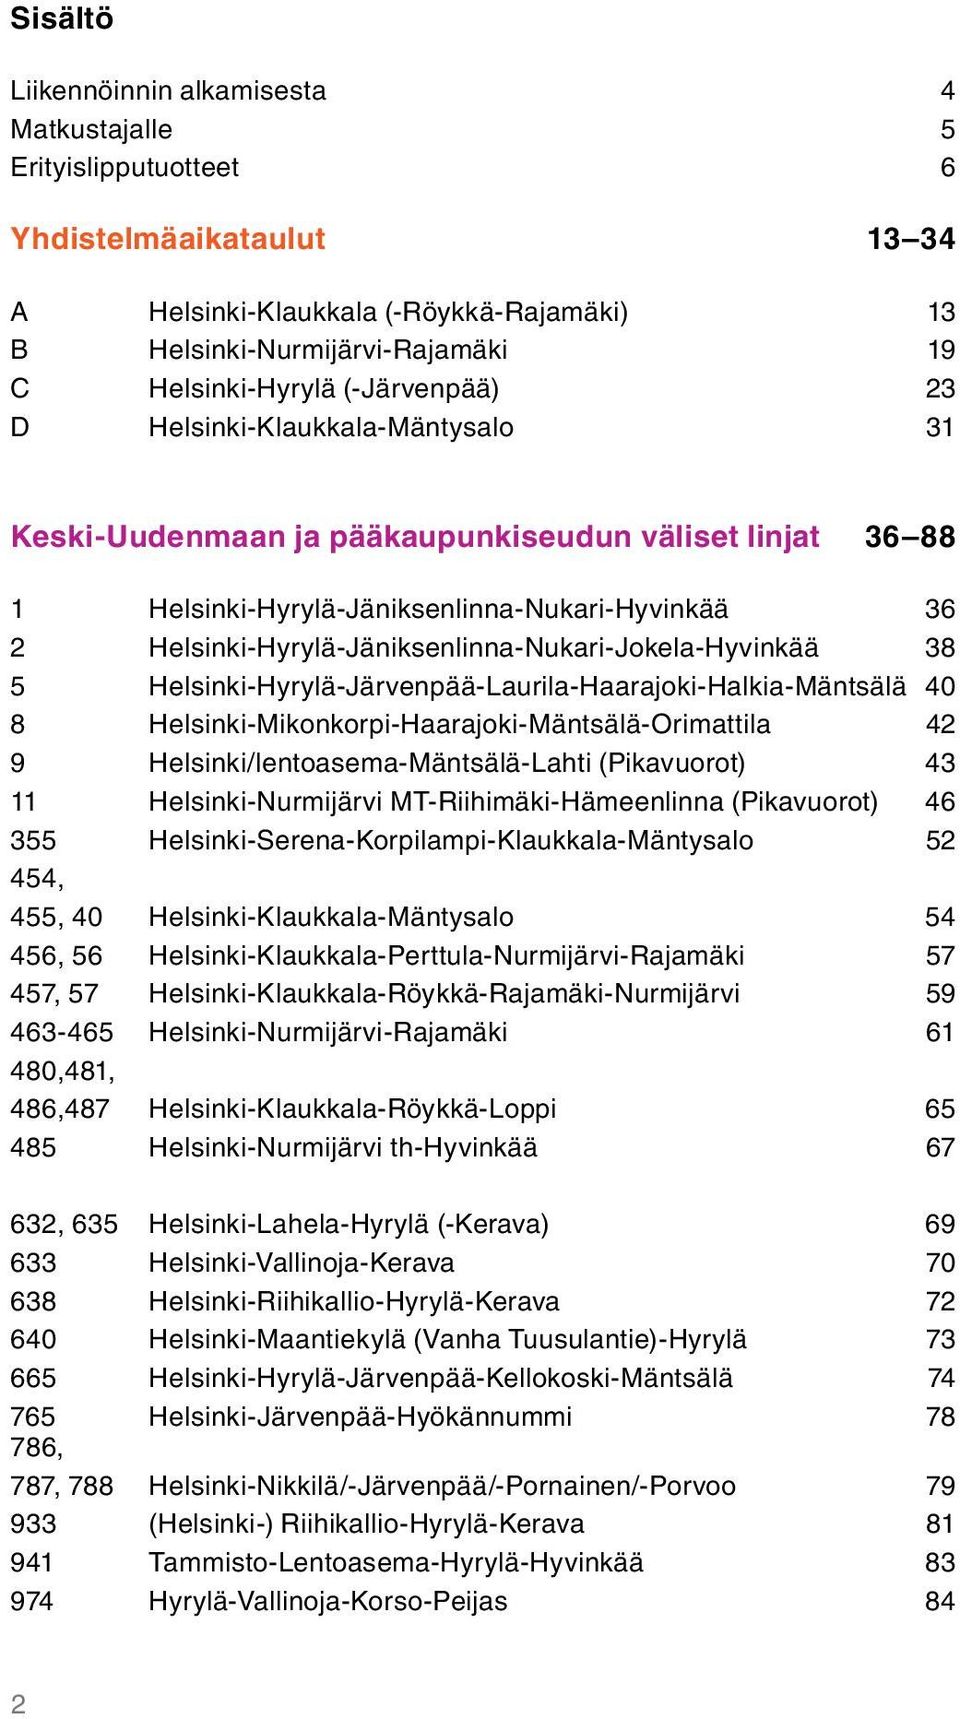 Helsinki-Hyrylä-Jäniksenlinna-Nukari-Jokela-Hyvinkää 38 5 Helsinki-Hyrylä-Järvenpää-Laurila-Haarajoki-Halkia-Mäntsälä 40 8 Helsinki-Mikonkorpi-Haarajoki-Mäntsälä-Orimattila 42 9